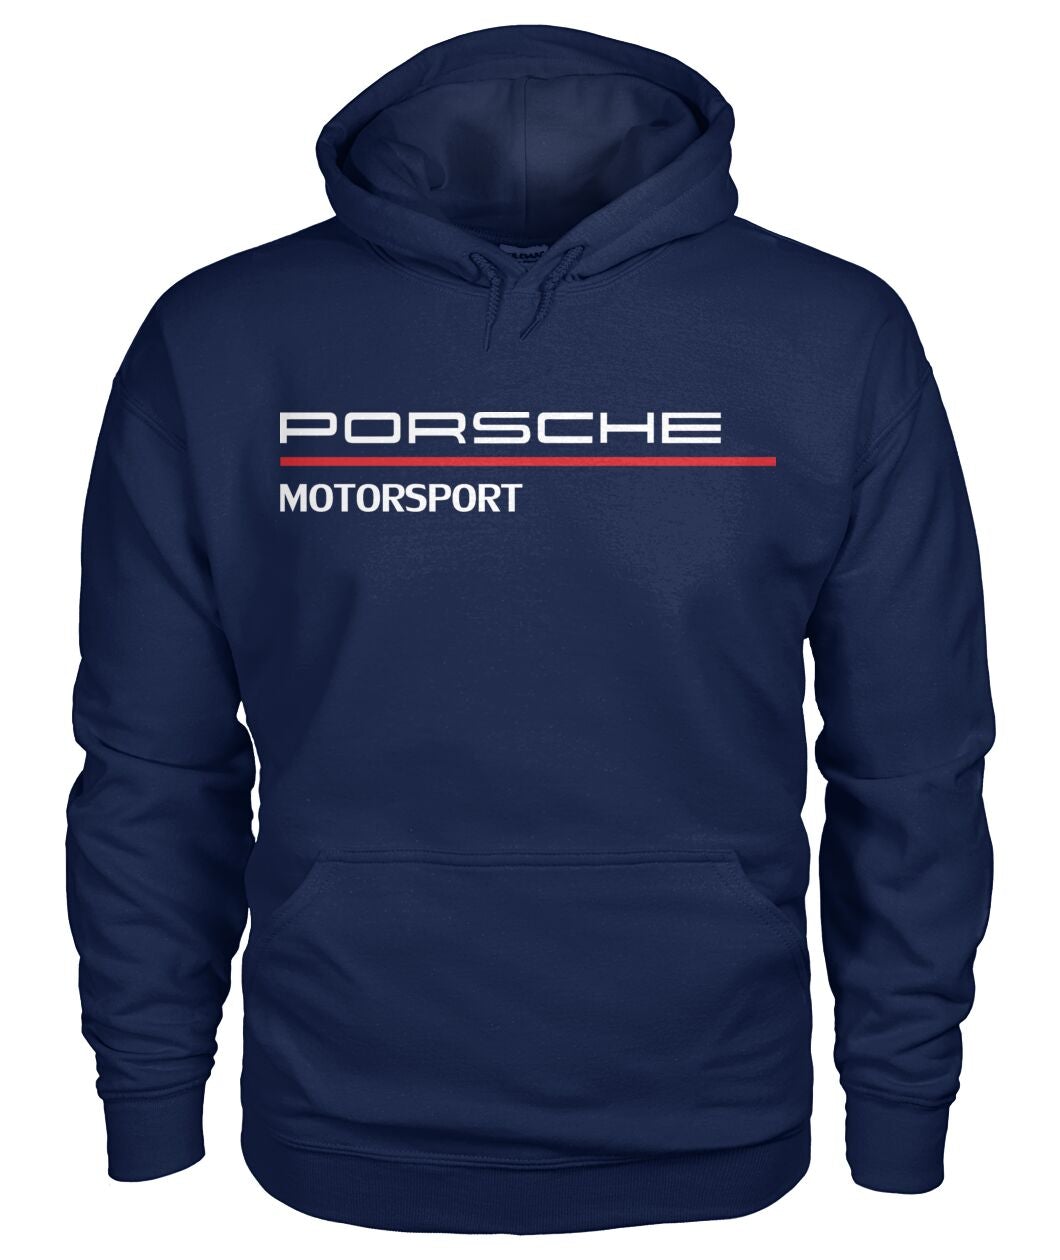 Porsche Motorsport Premium Hoodie